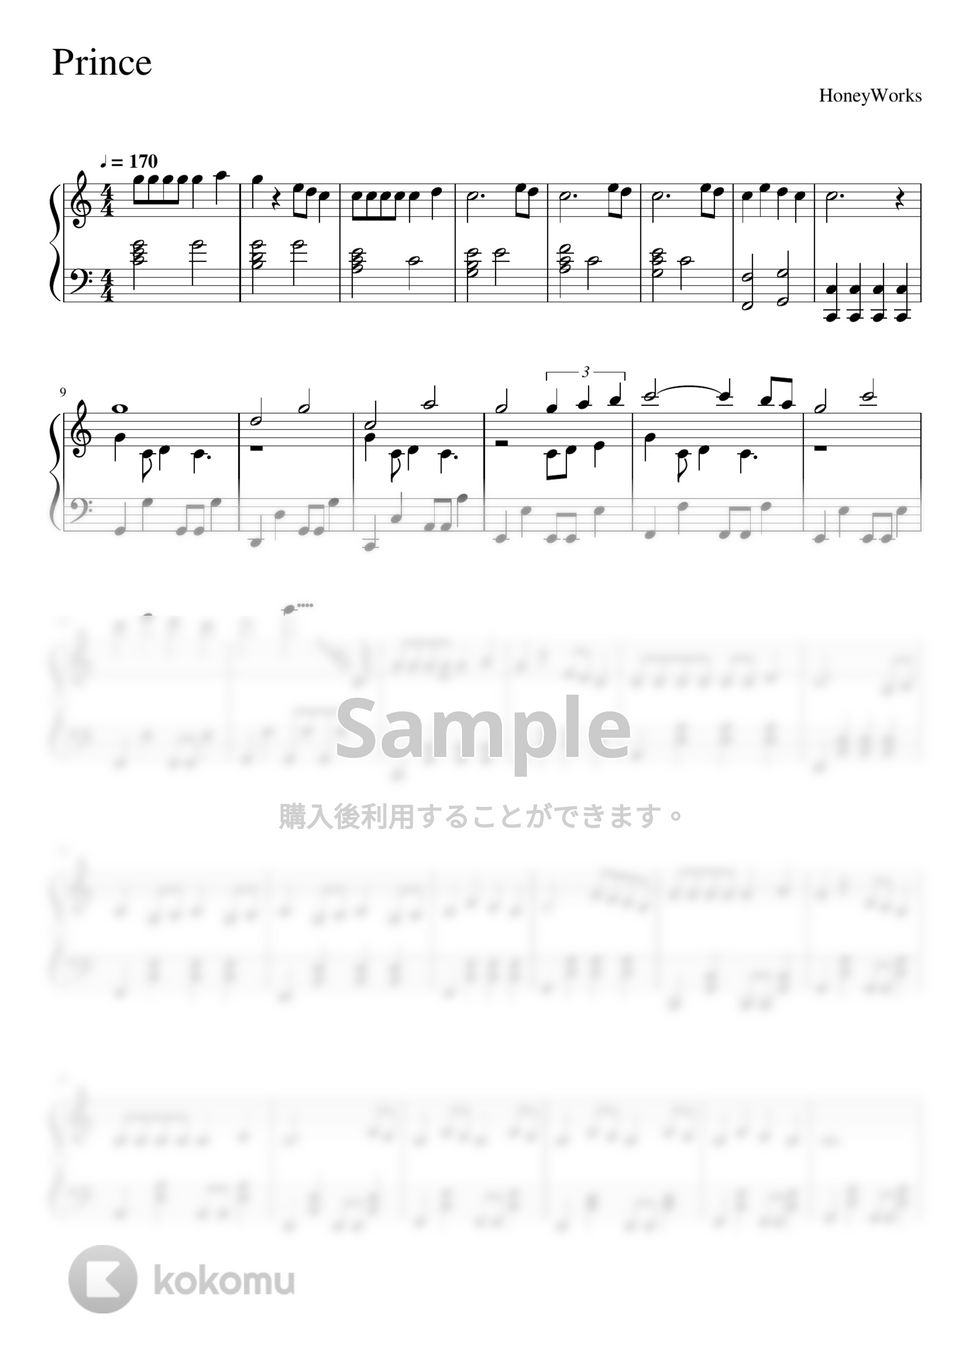 すとぷり - Prince (ピアノソロ譜) by 萌や氏